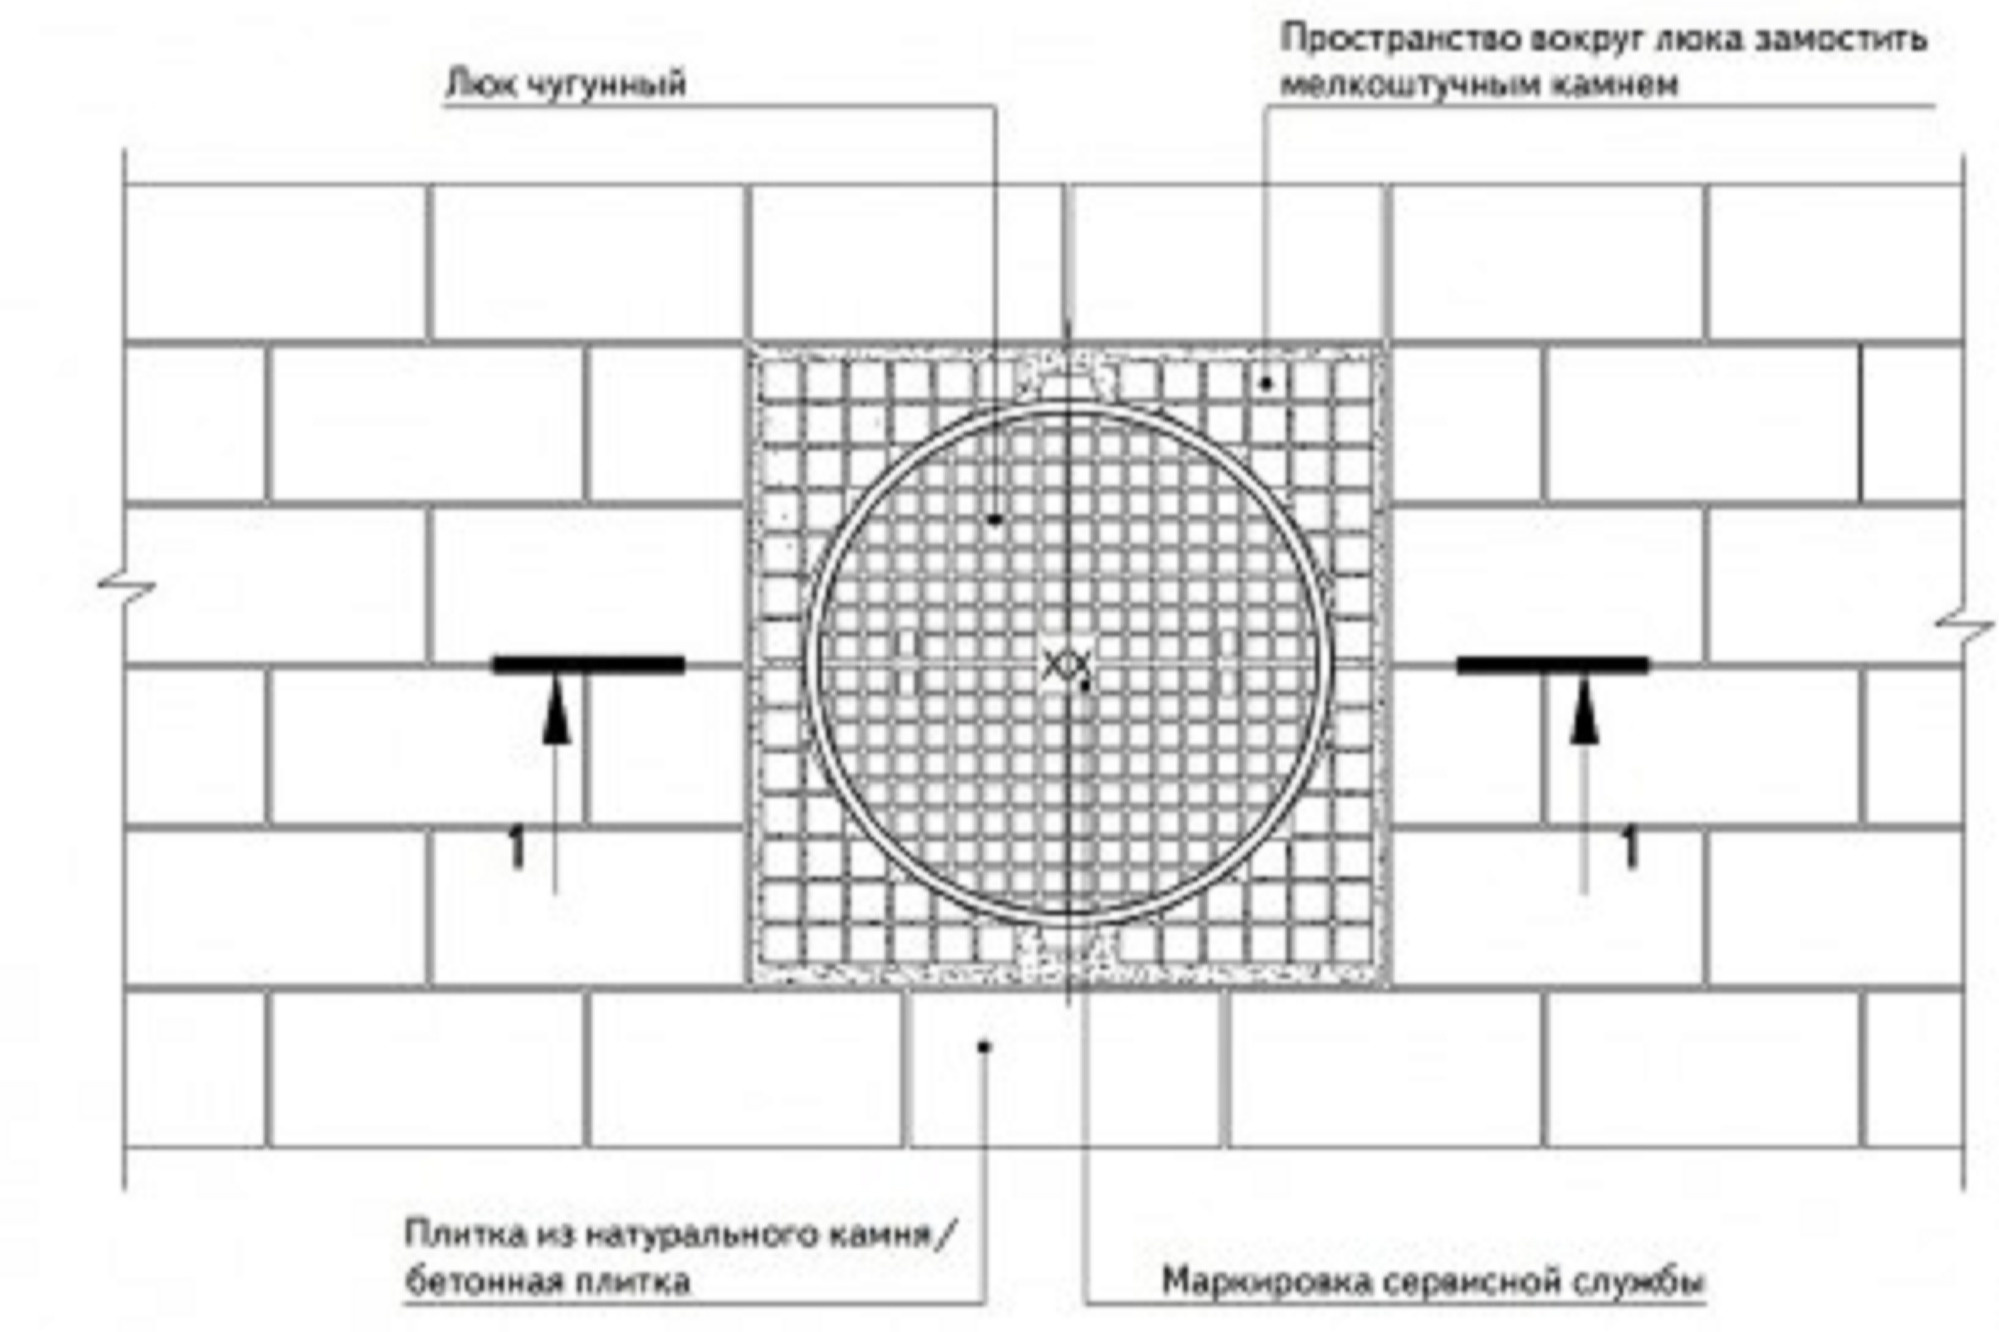 Принципиальная схема устройства круглого люка в мощение из бетонной плитки (плитки из натурального камня)